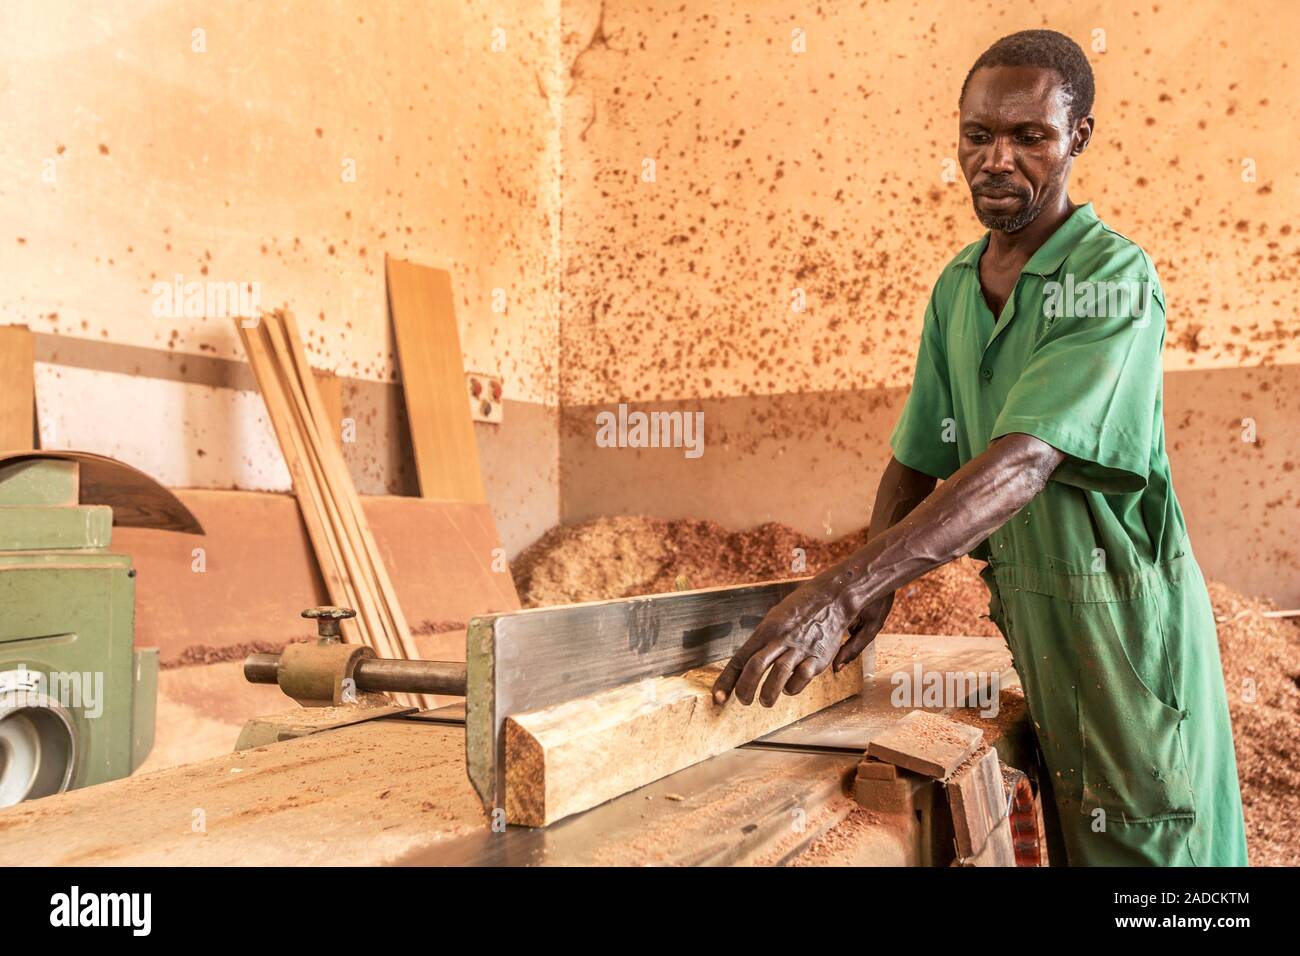 https://c8.alamy.com/compit/2adcktm/il-lavoro-di-falegnameria-la-lavorazione-del-legno-utensili-utilizzati-da-un-falegname-per-produrre-articoli-in-legno-fotografato-a-lacor-gulu-in-uganda-2adcktm.jpg